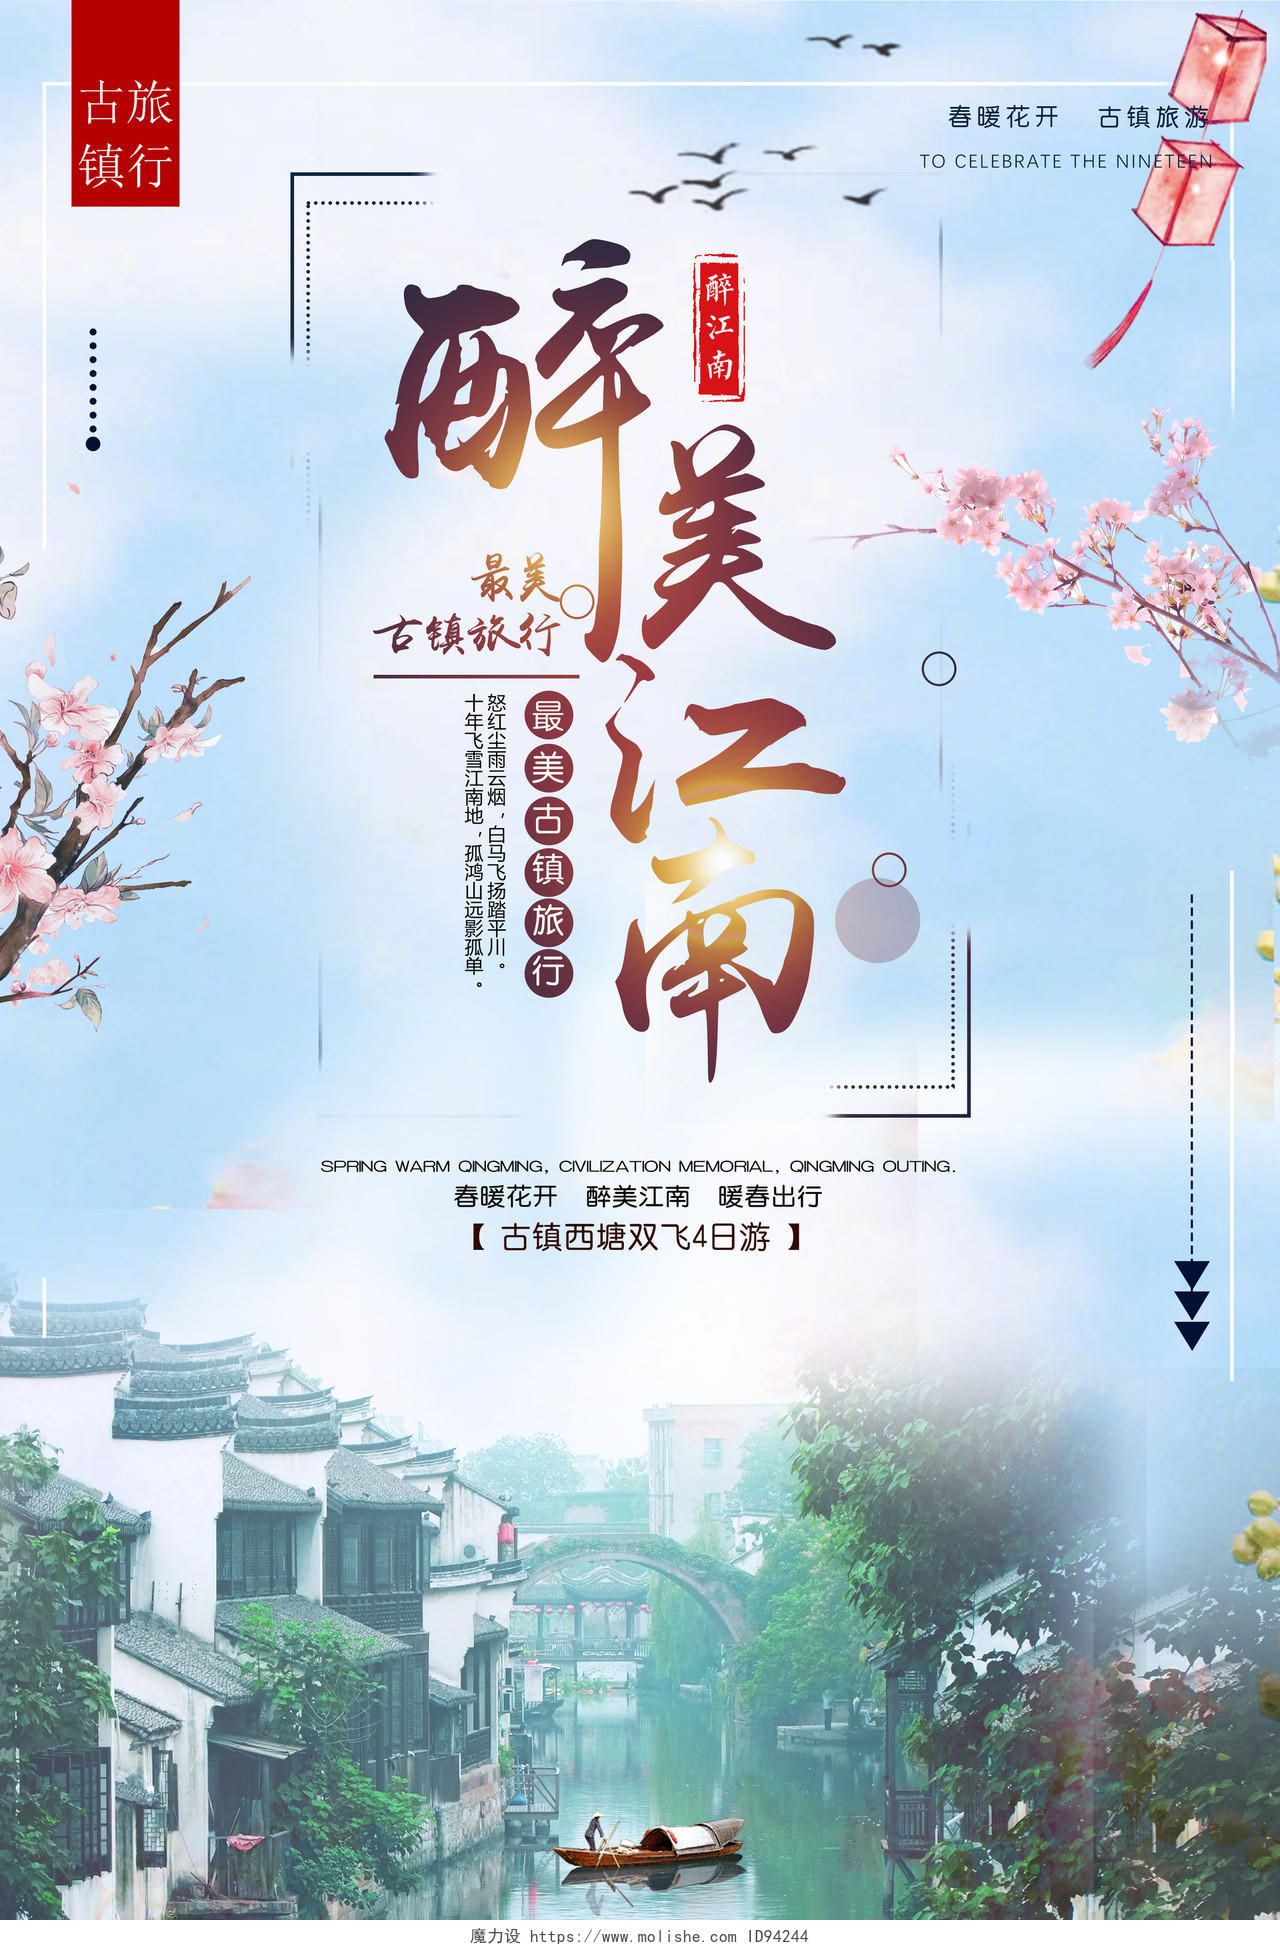 醉美江南春季古镇旅游宣传海报设计